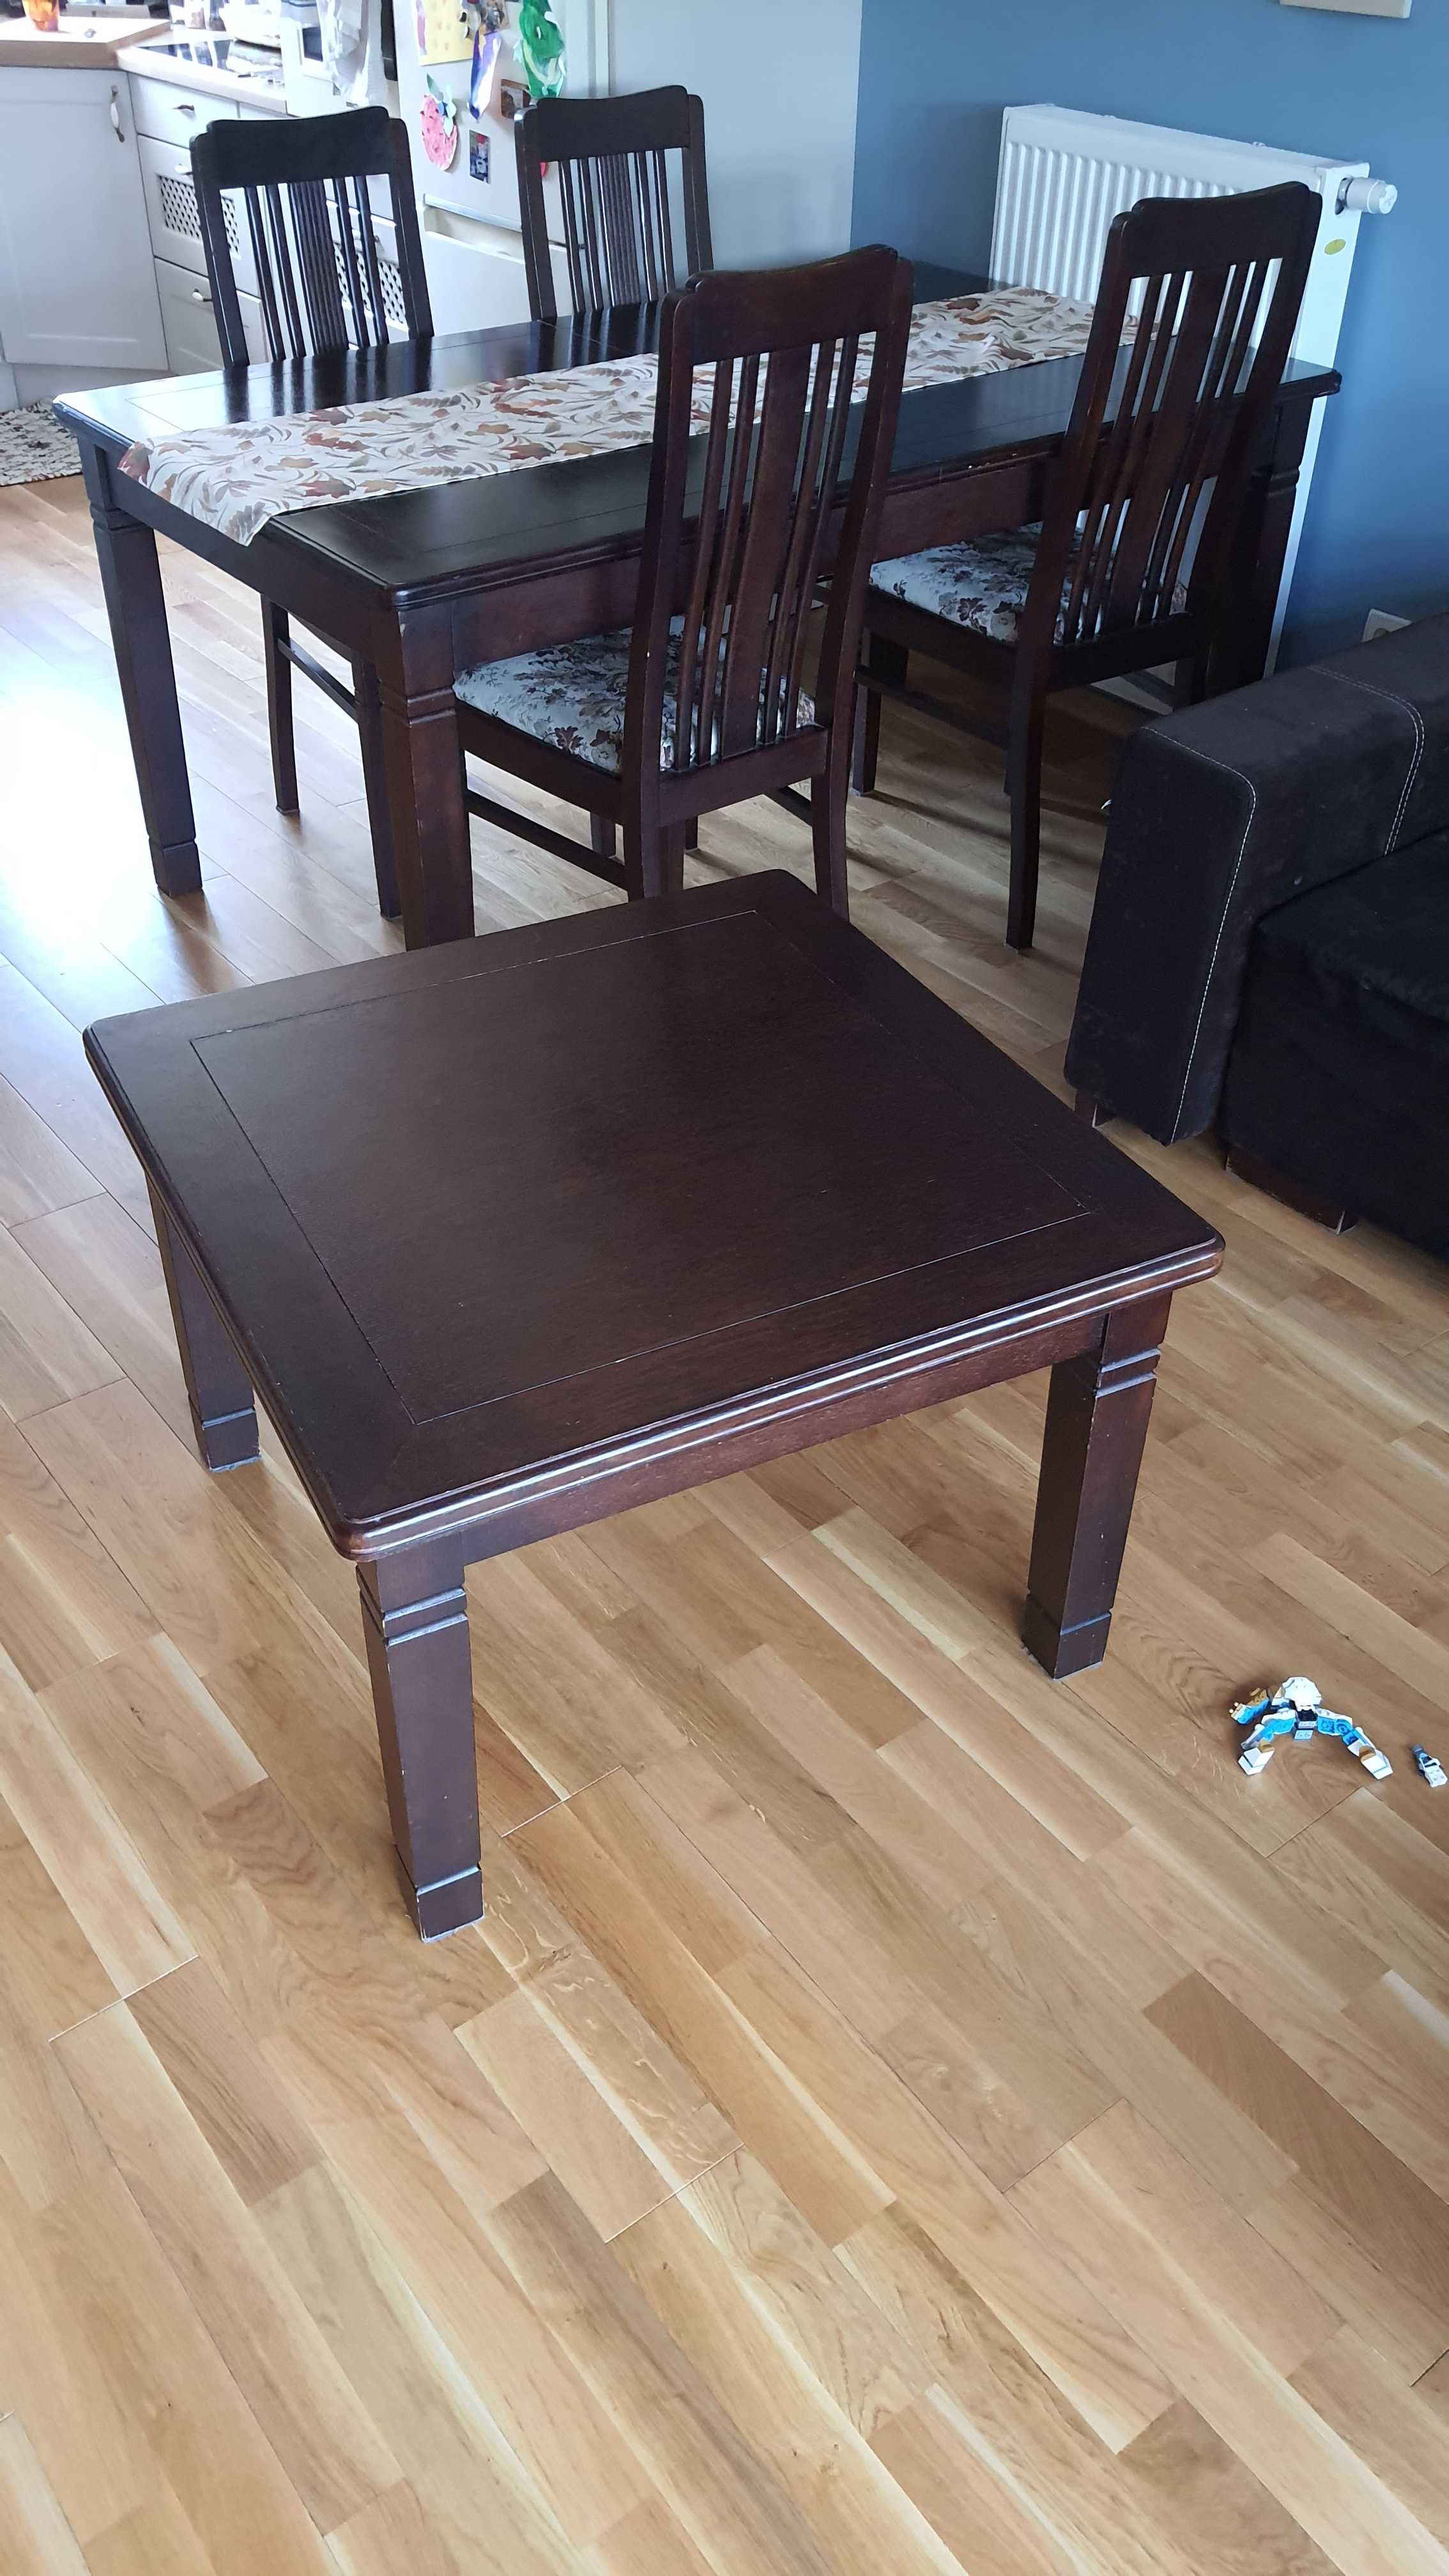 Stół drewniany (dębowy) z krzesłami i stolikiem kawowym